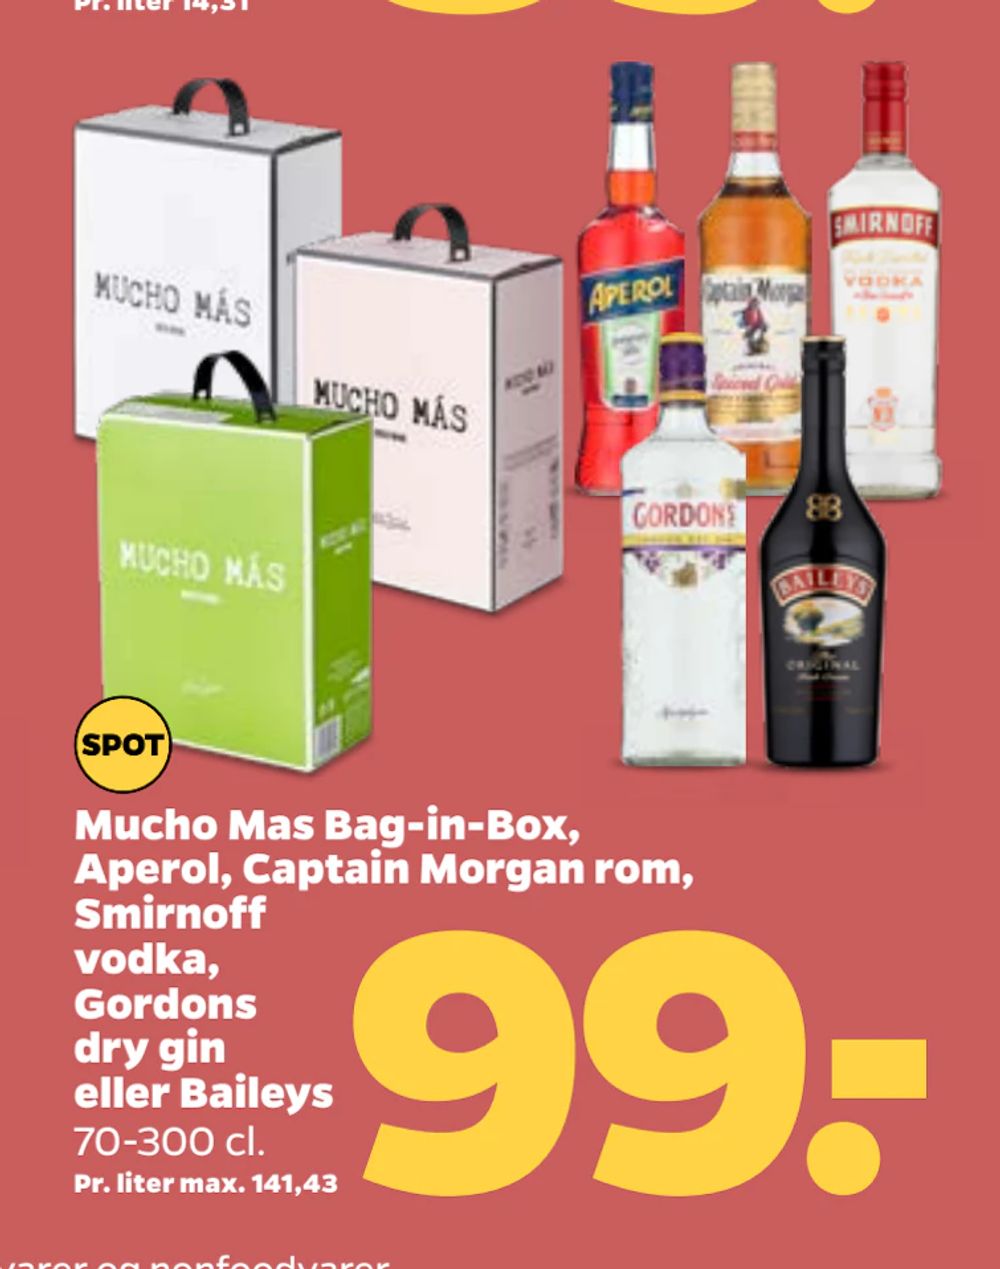 Tilbud på Mucho Mas Bag-in-Box, Aperol, Captain Morgan rom, Smirnoff vodka, Gordons dry gin eller Baileys fra Netto til 99 kr.